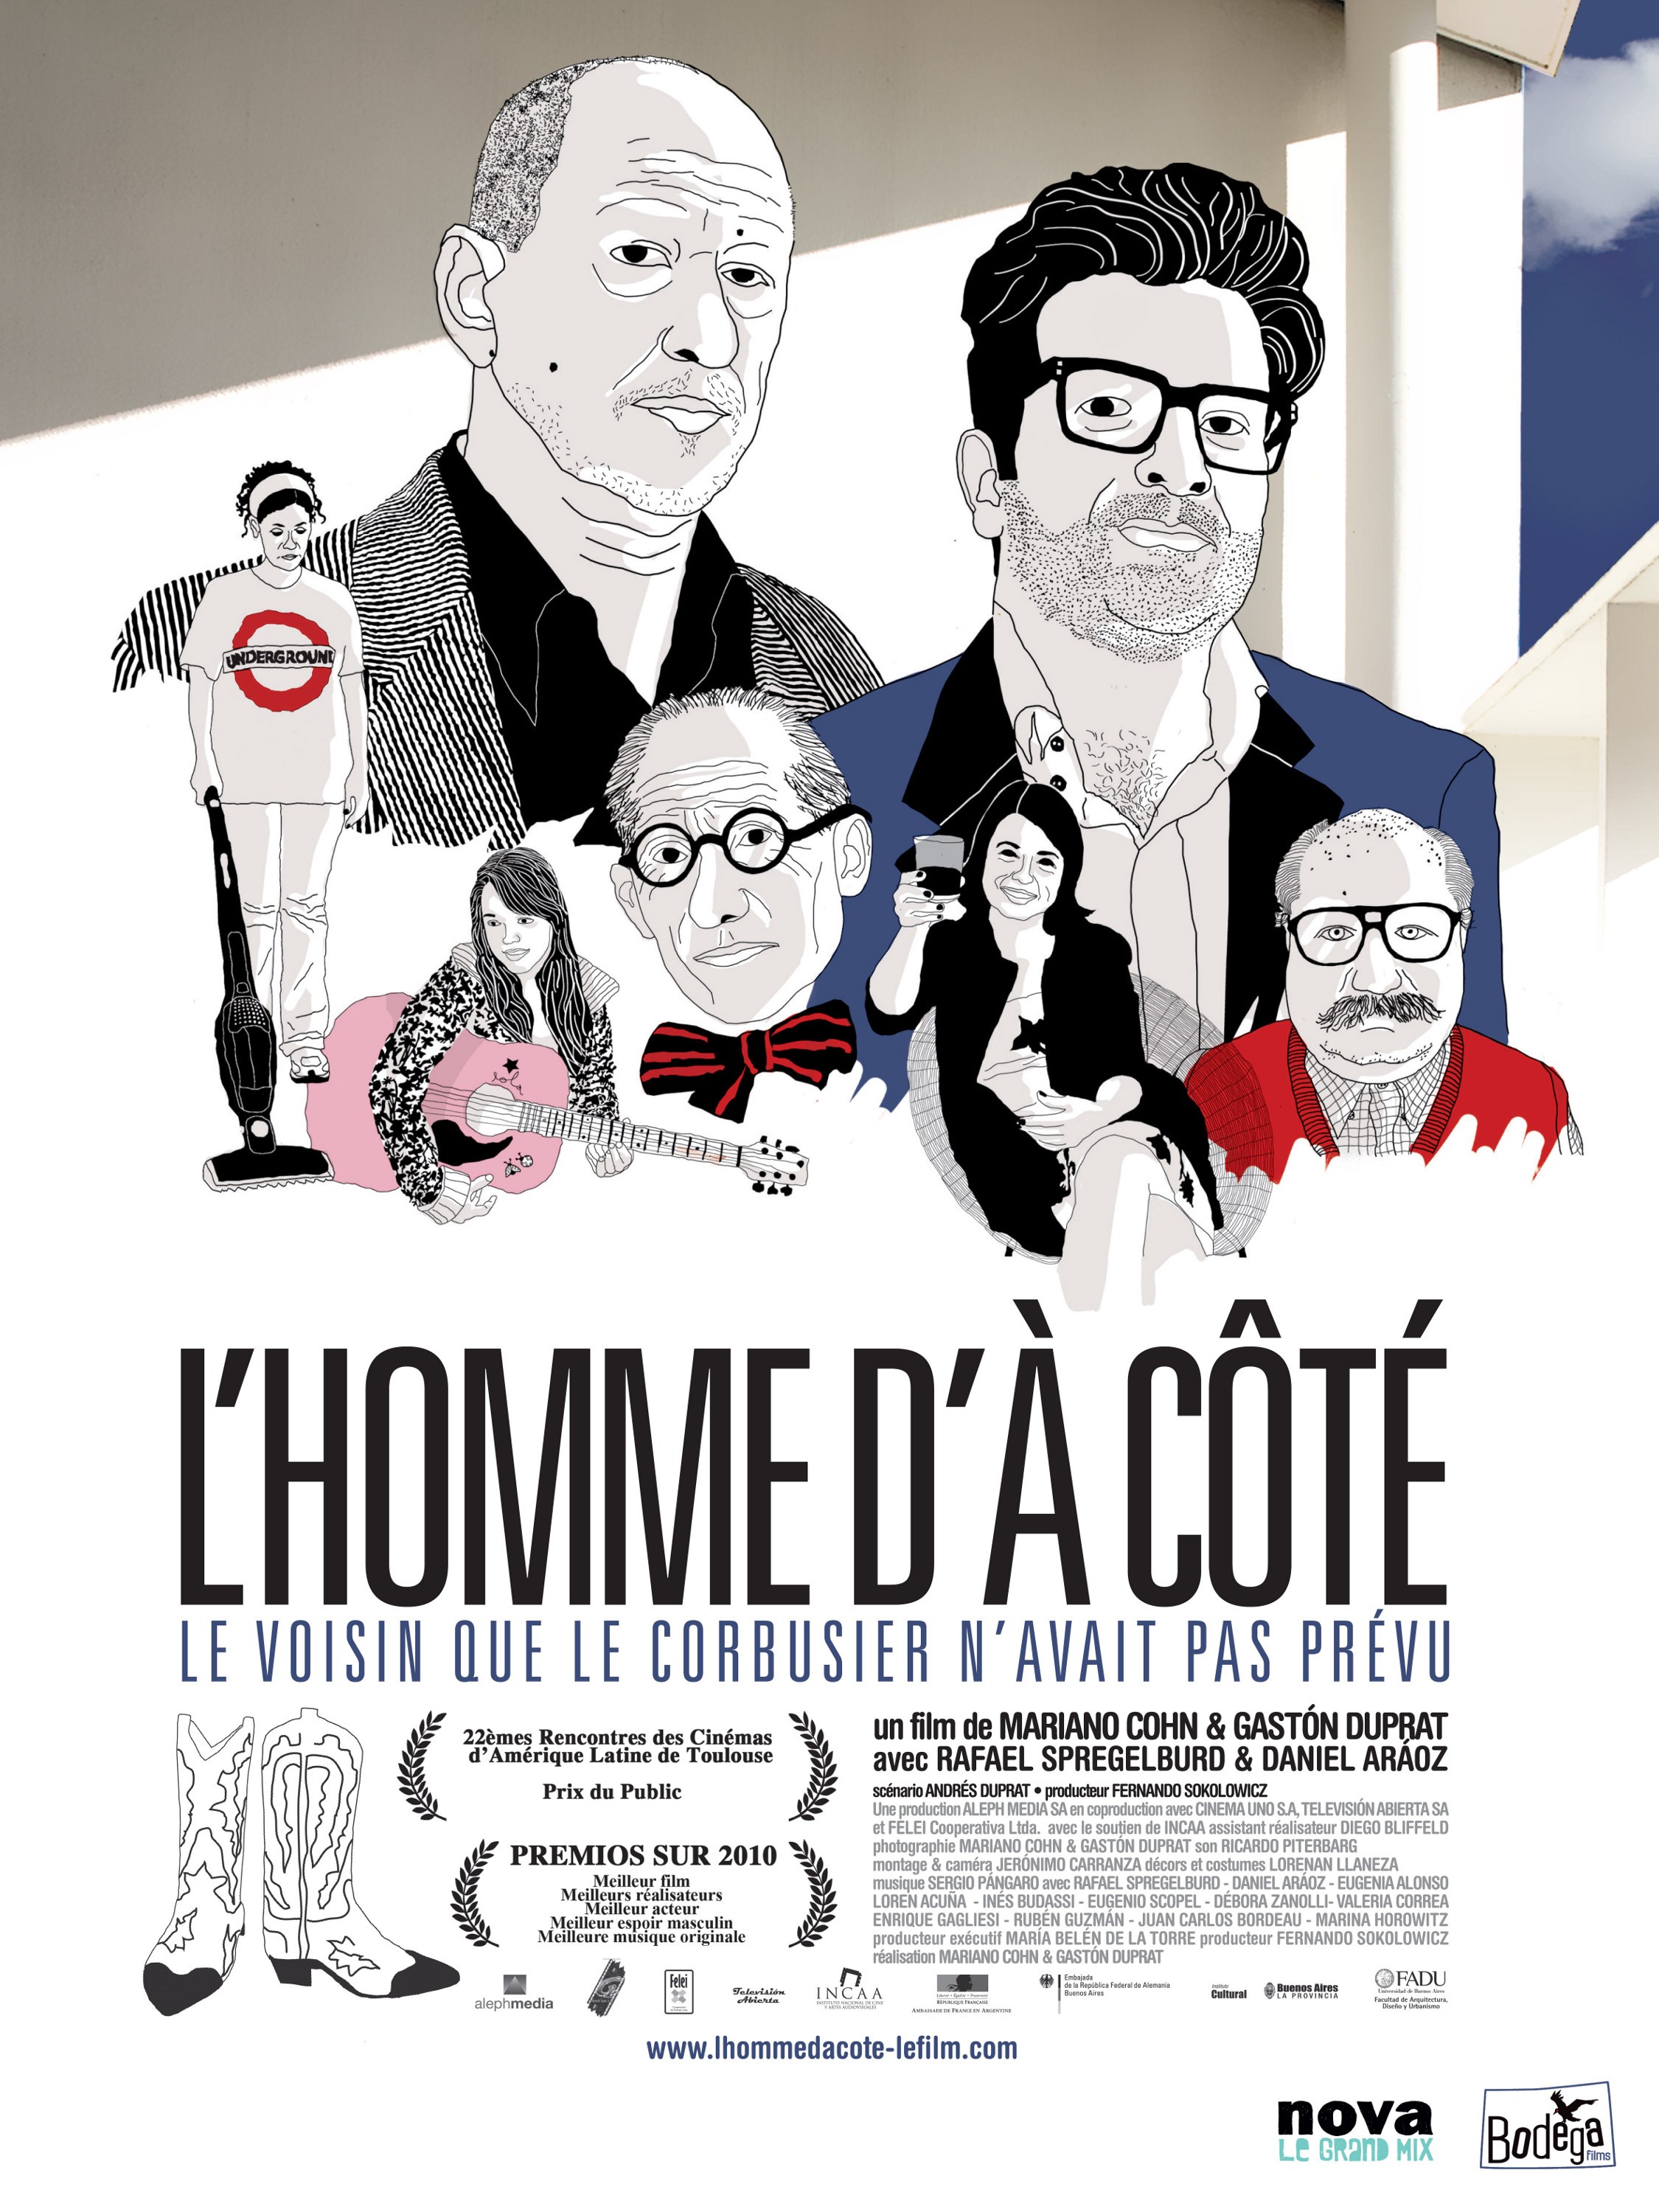 Mega Sized Movie Poster Image for El hombre de al lado (#2 of 2)